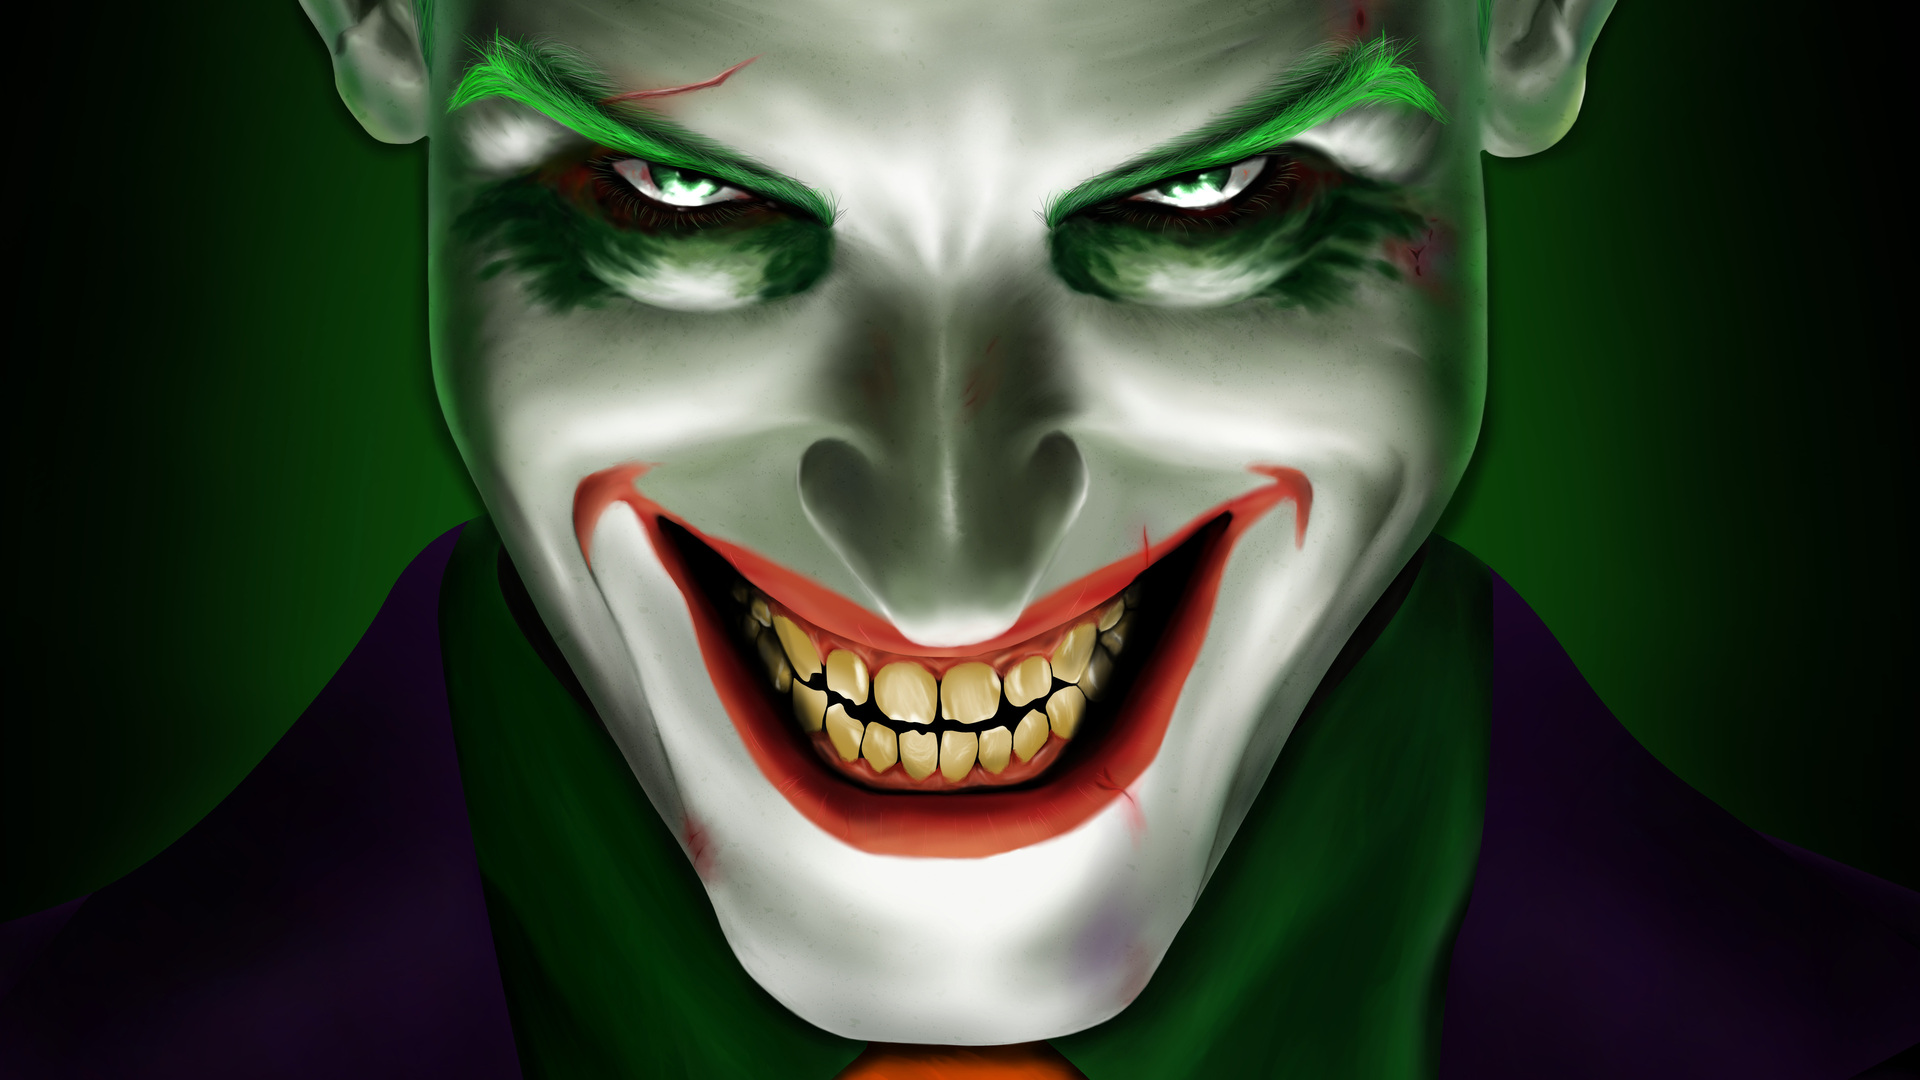 Download Gambar Wallpaper the Joker Full Hd terbaru 2020 Miuiku